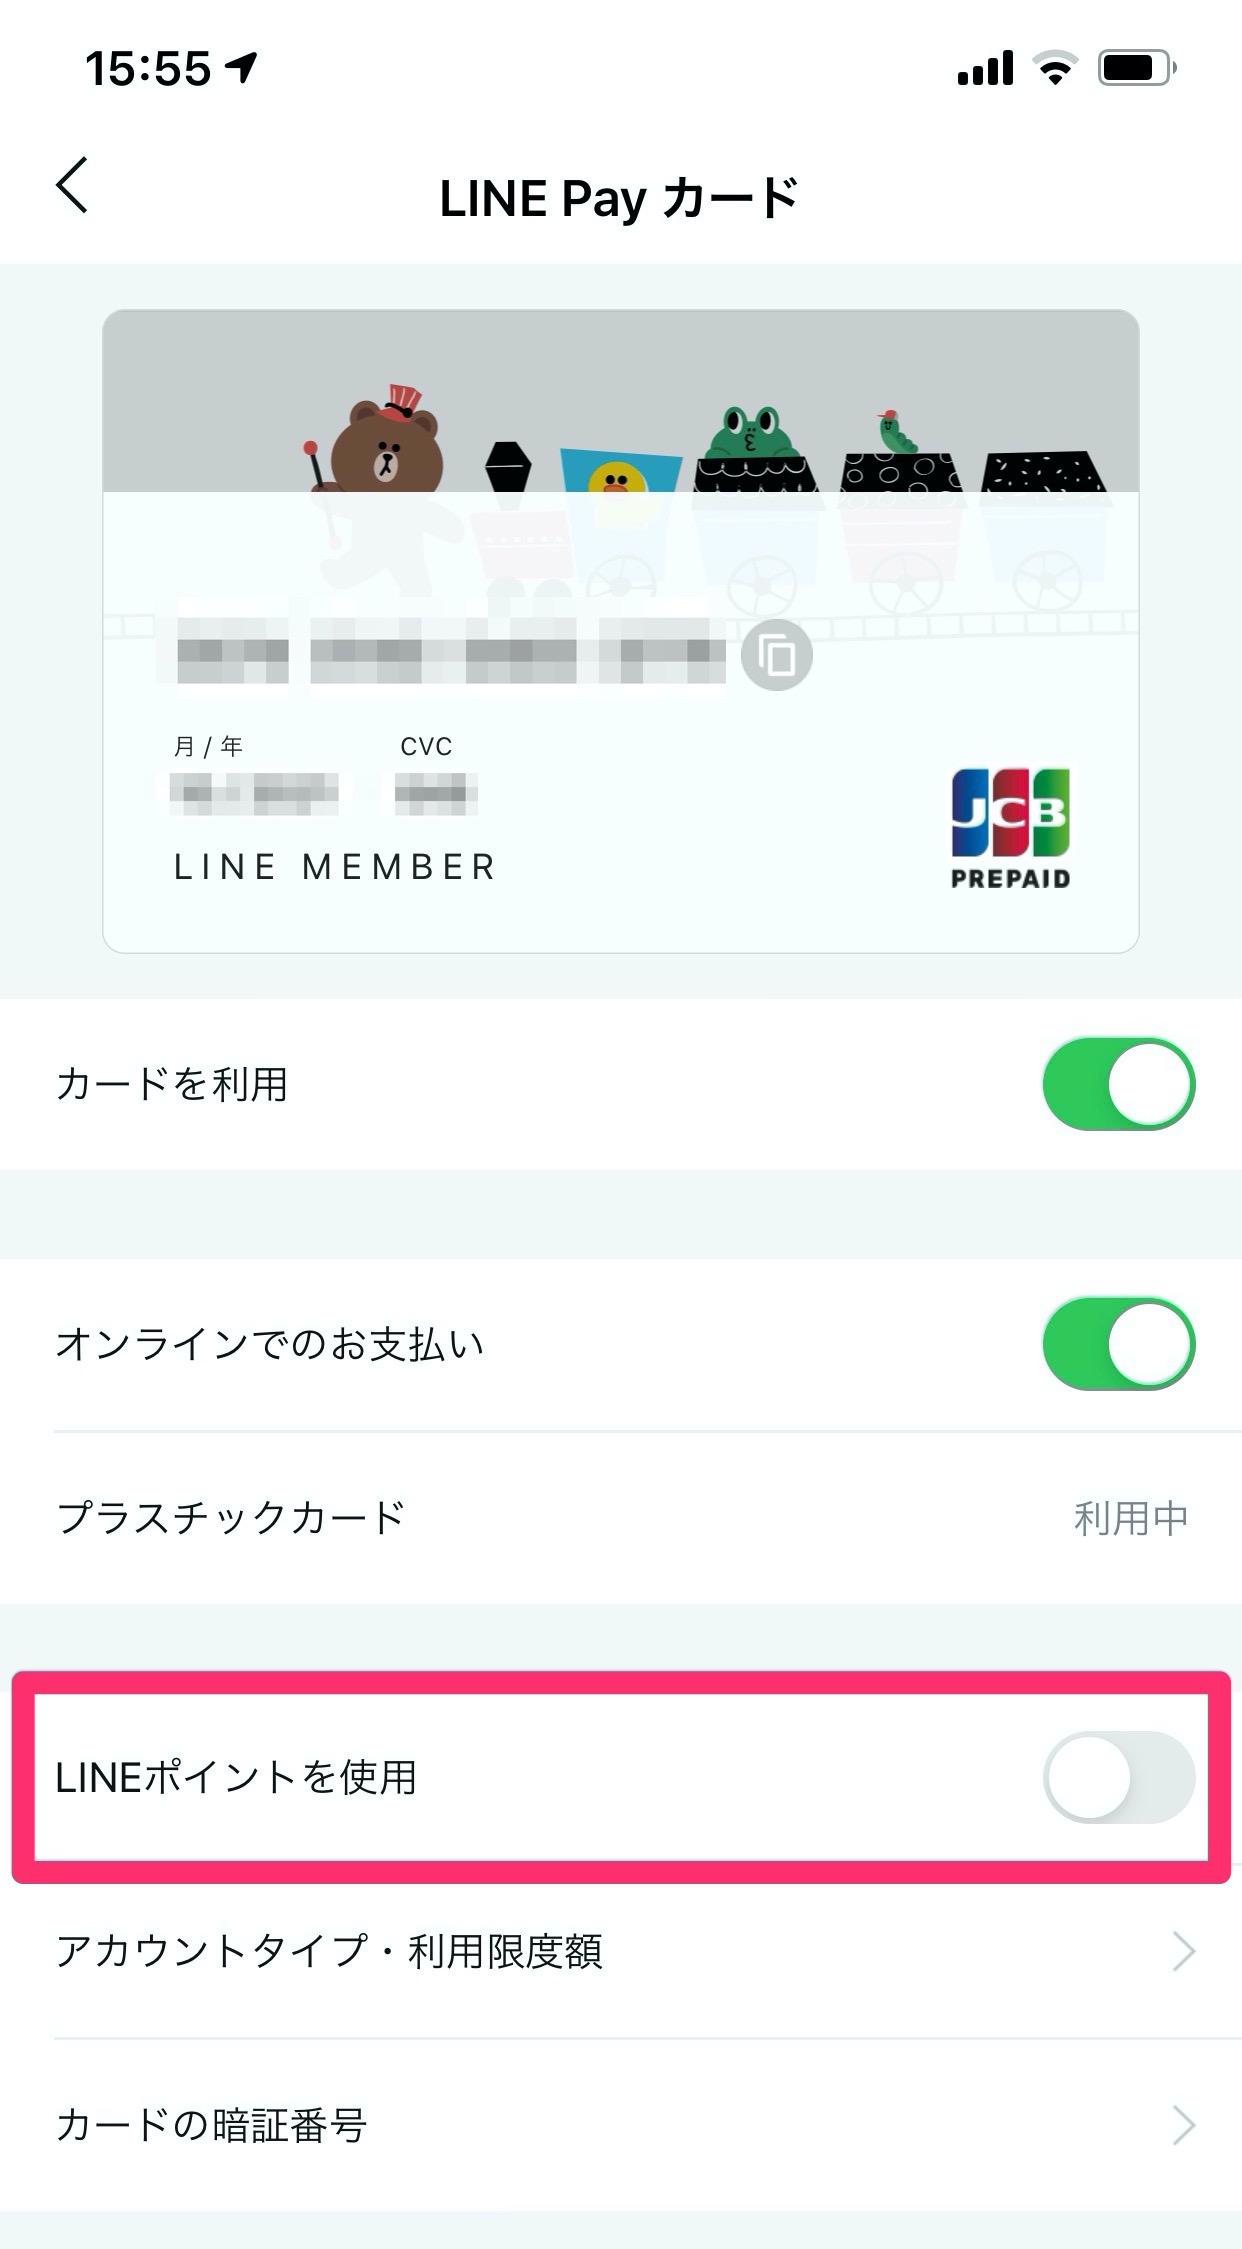 「LINE Payカード」「QUICPay+」の支払いにLINEポイントが利用可能に（事前に要設定）